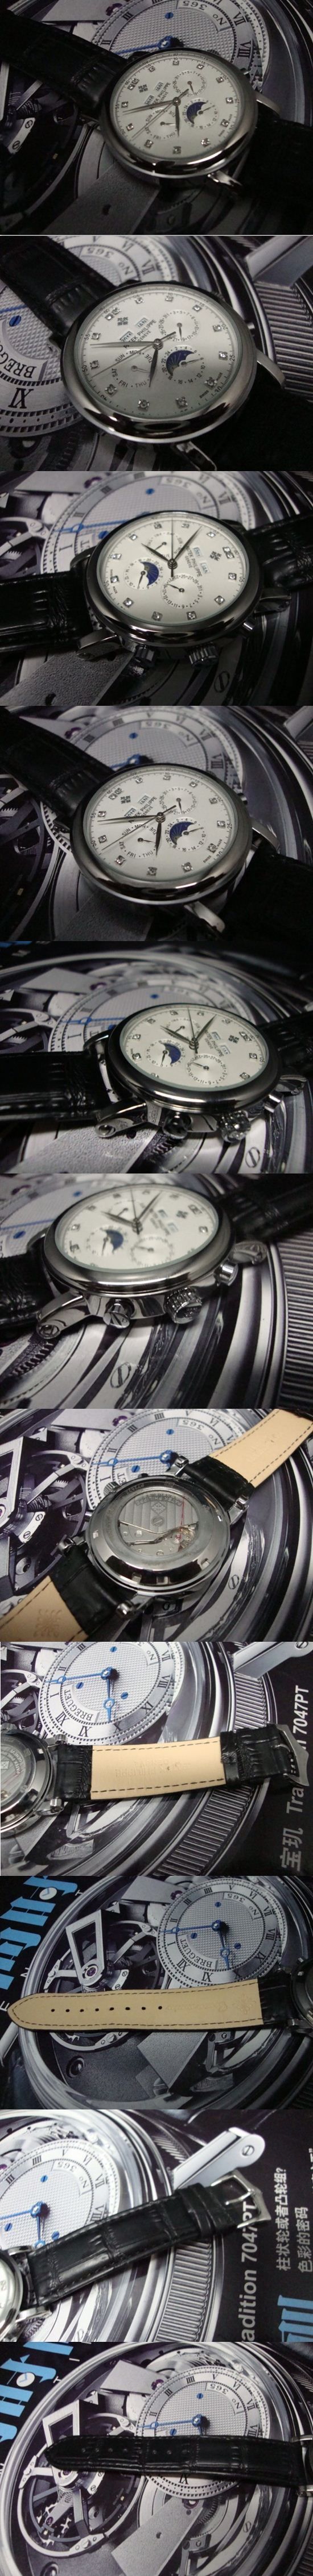 おしゃれなブランド時計がPATEK PHILIPPE-パテック フィリップ腕時計 パテック フィリップ 男/女腕時計 PATEK-PHILIPPE-N-004A を提供します.